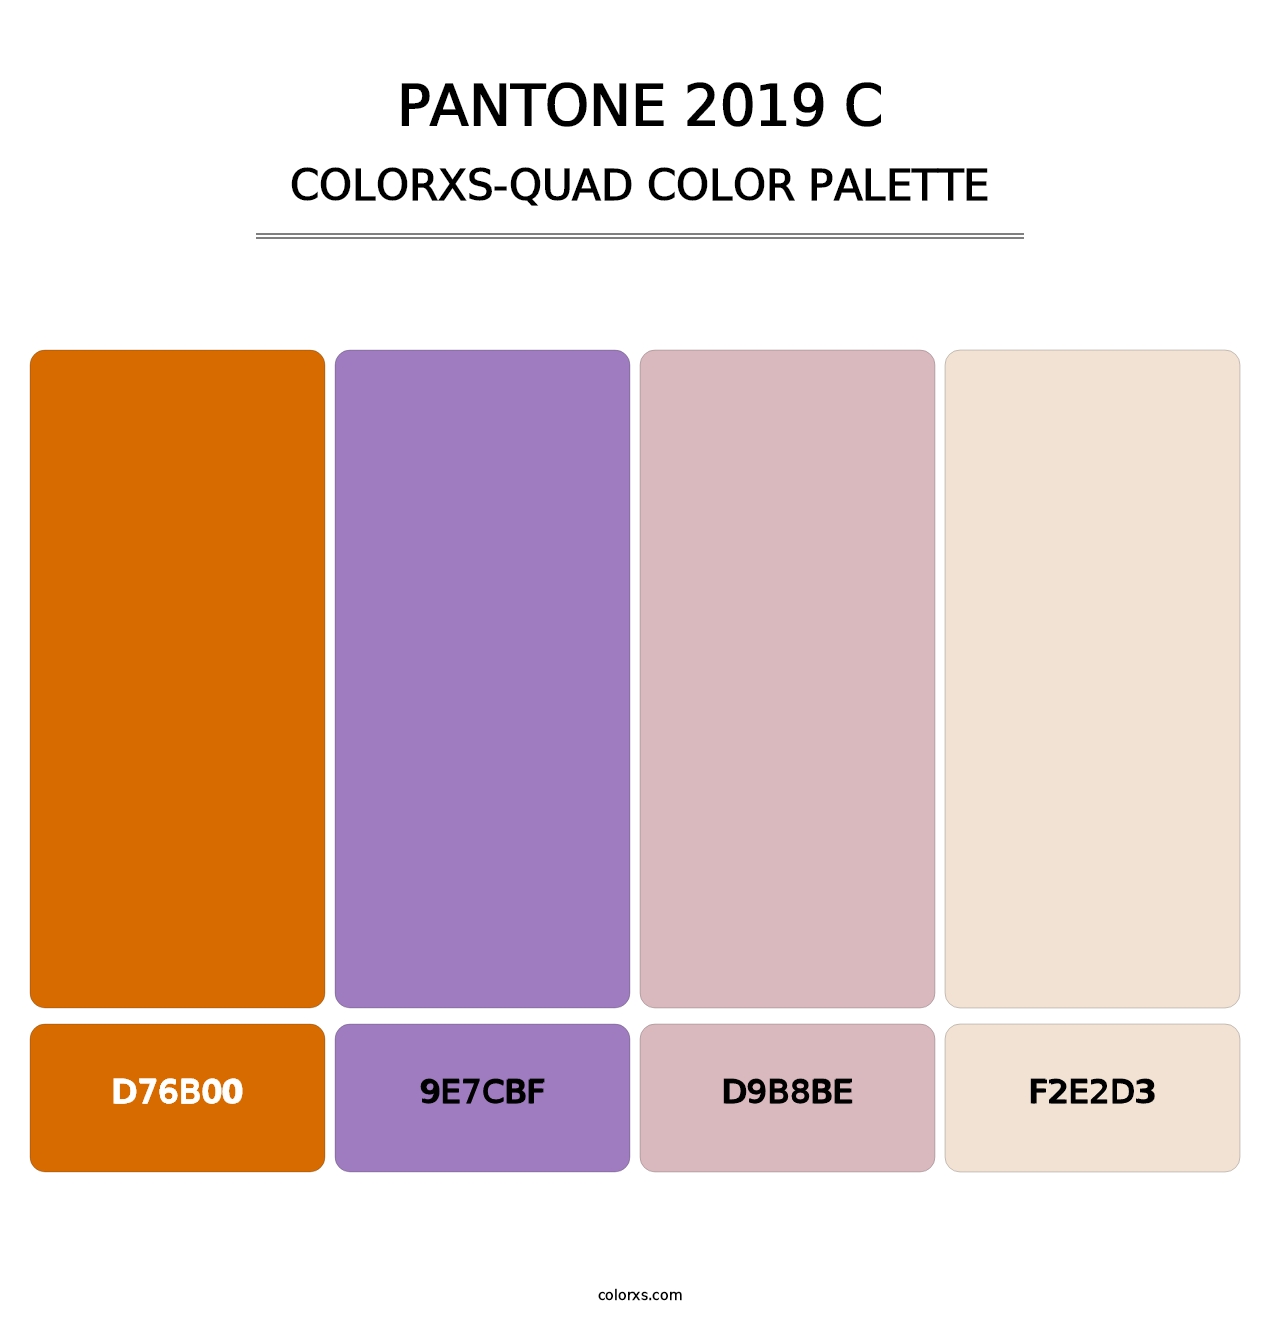 PANTONE 2019 C - Colorxs Quad Palette